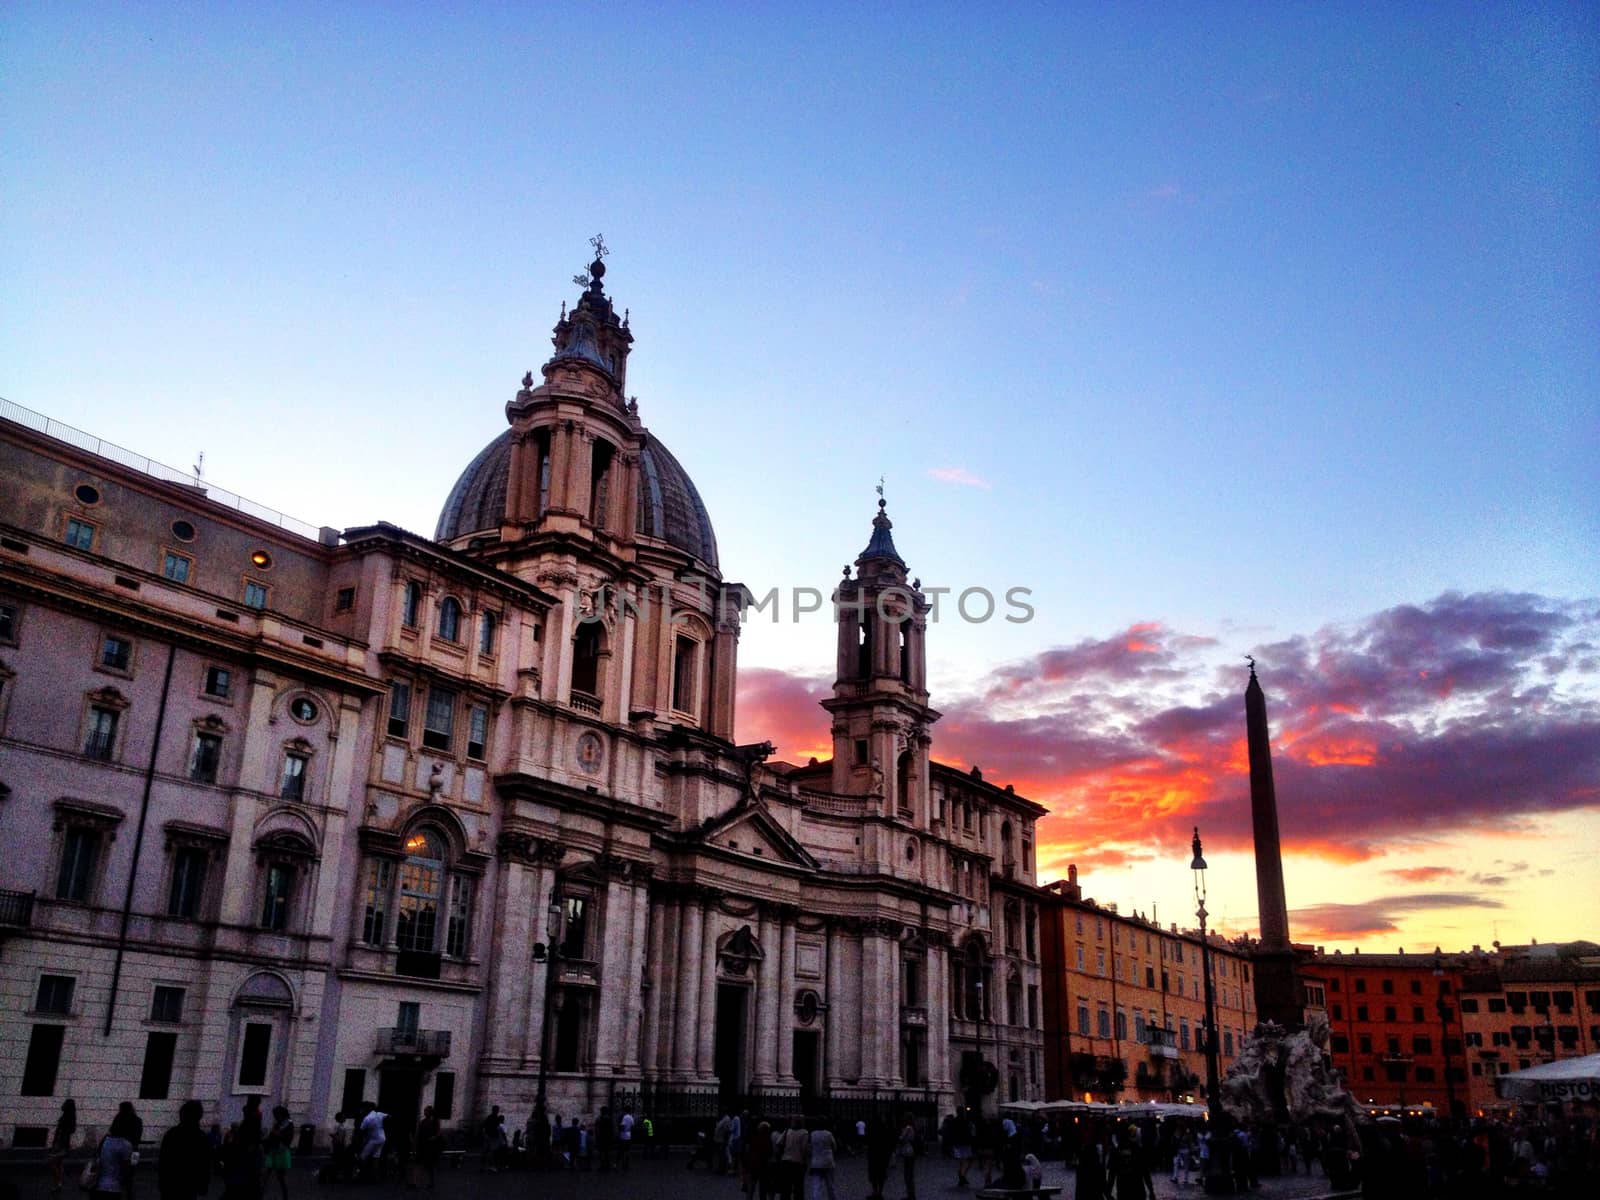 Warm sunset in roman square by rarrarorro